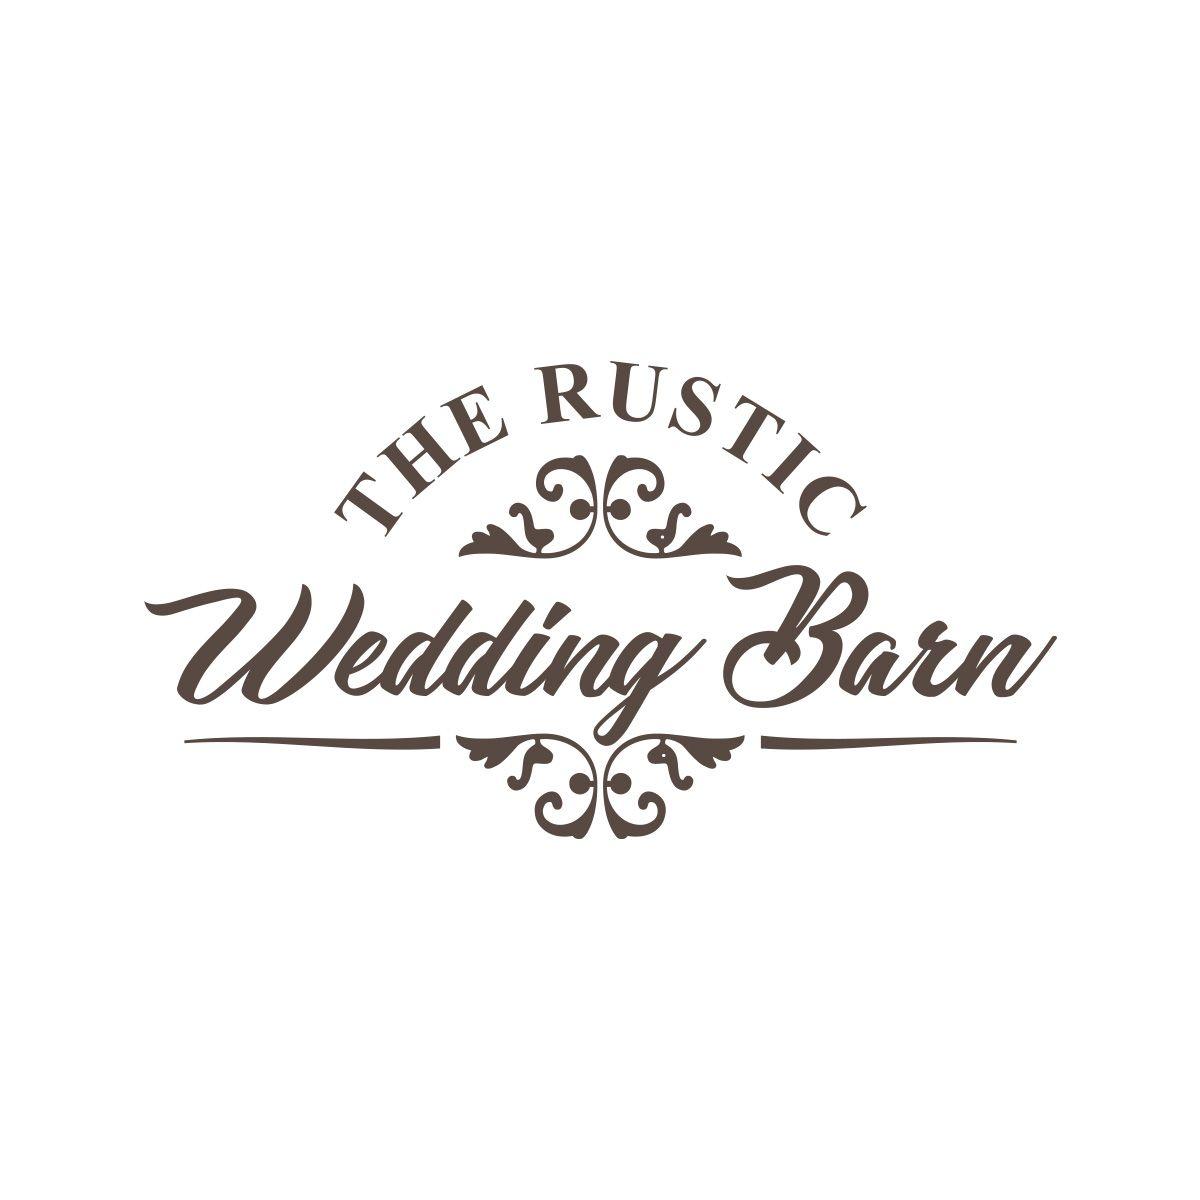 Rustic Wedding Logo - Elegant, Playful, Wedding Logo Design for the rustic wedding barn by ...